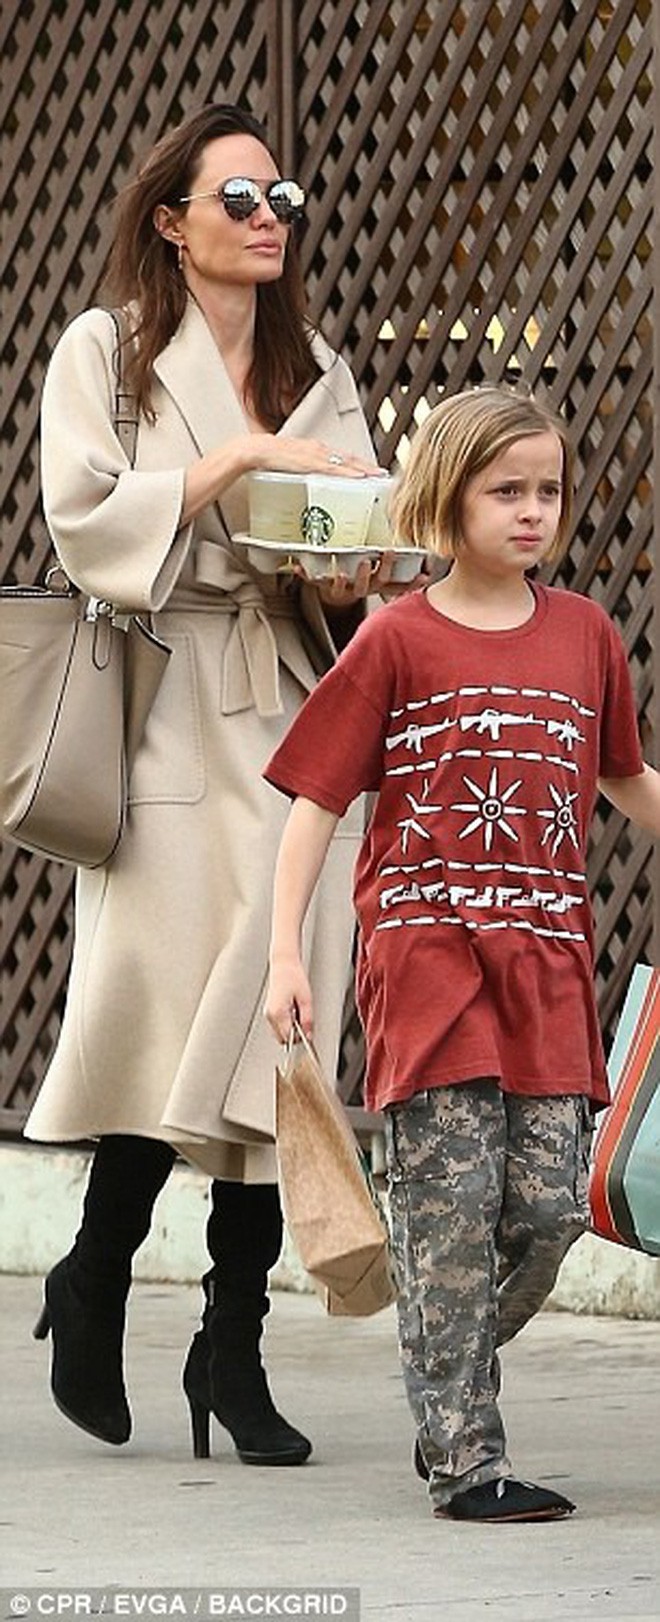 Angelina Jolie có hàng trăm tỷ, nhưng con gái cô lại mặc đồ giản dị và tự xách đồ khi mua sắm - Ảnh 3.